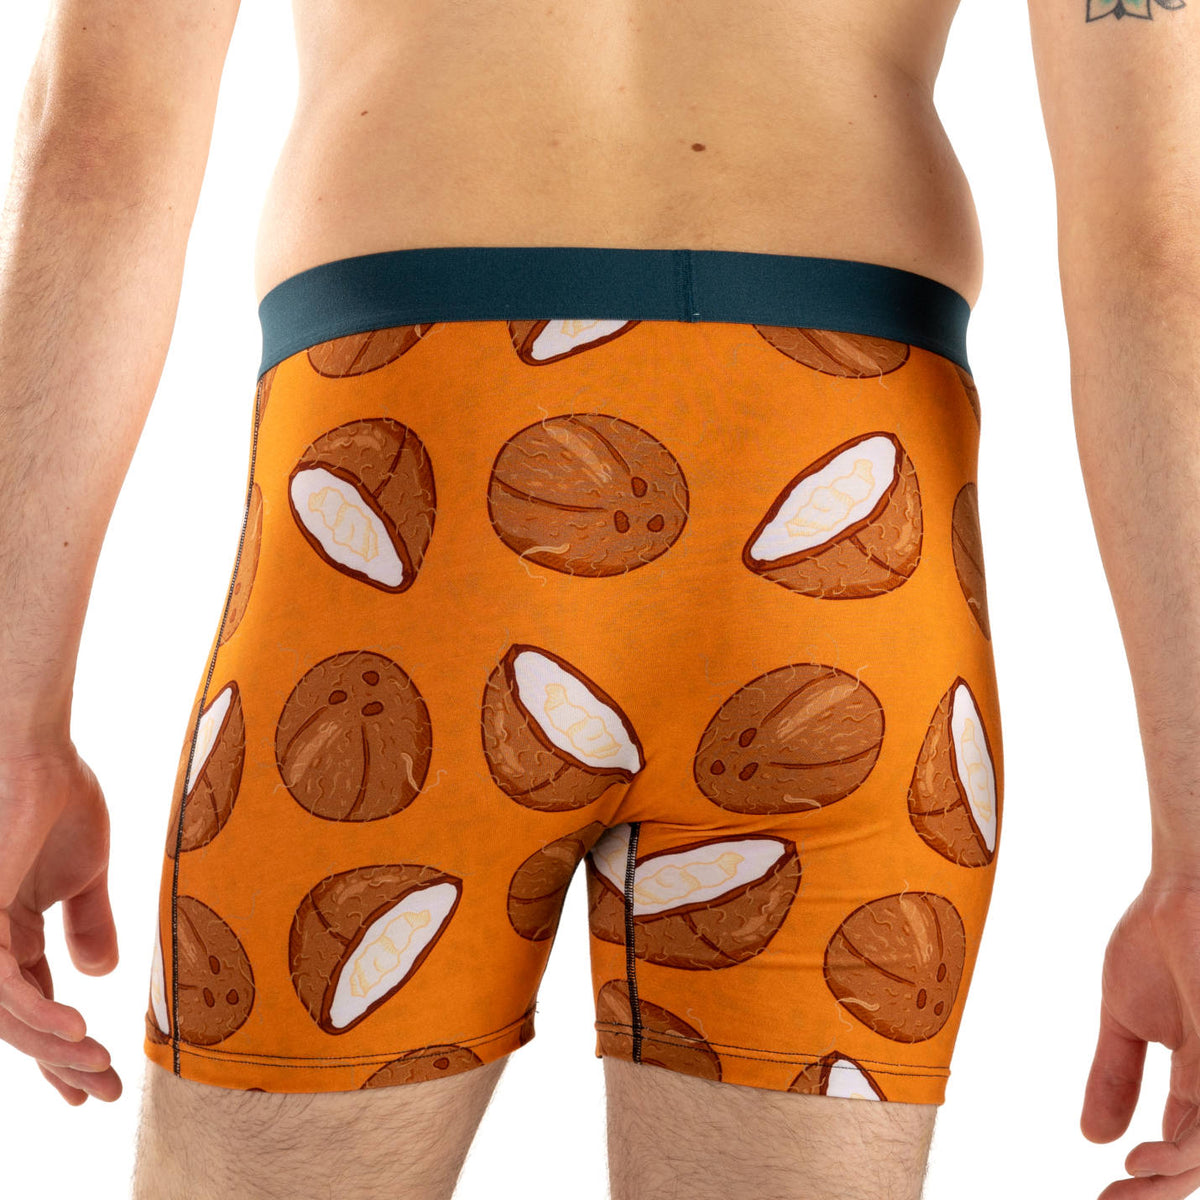 Men's Coconut Underwear